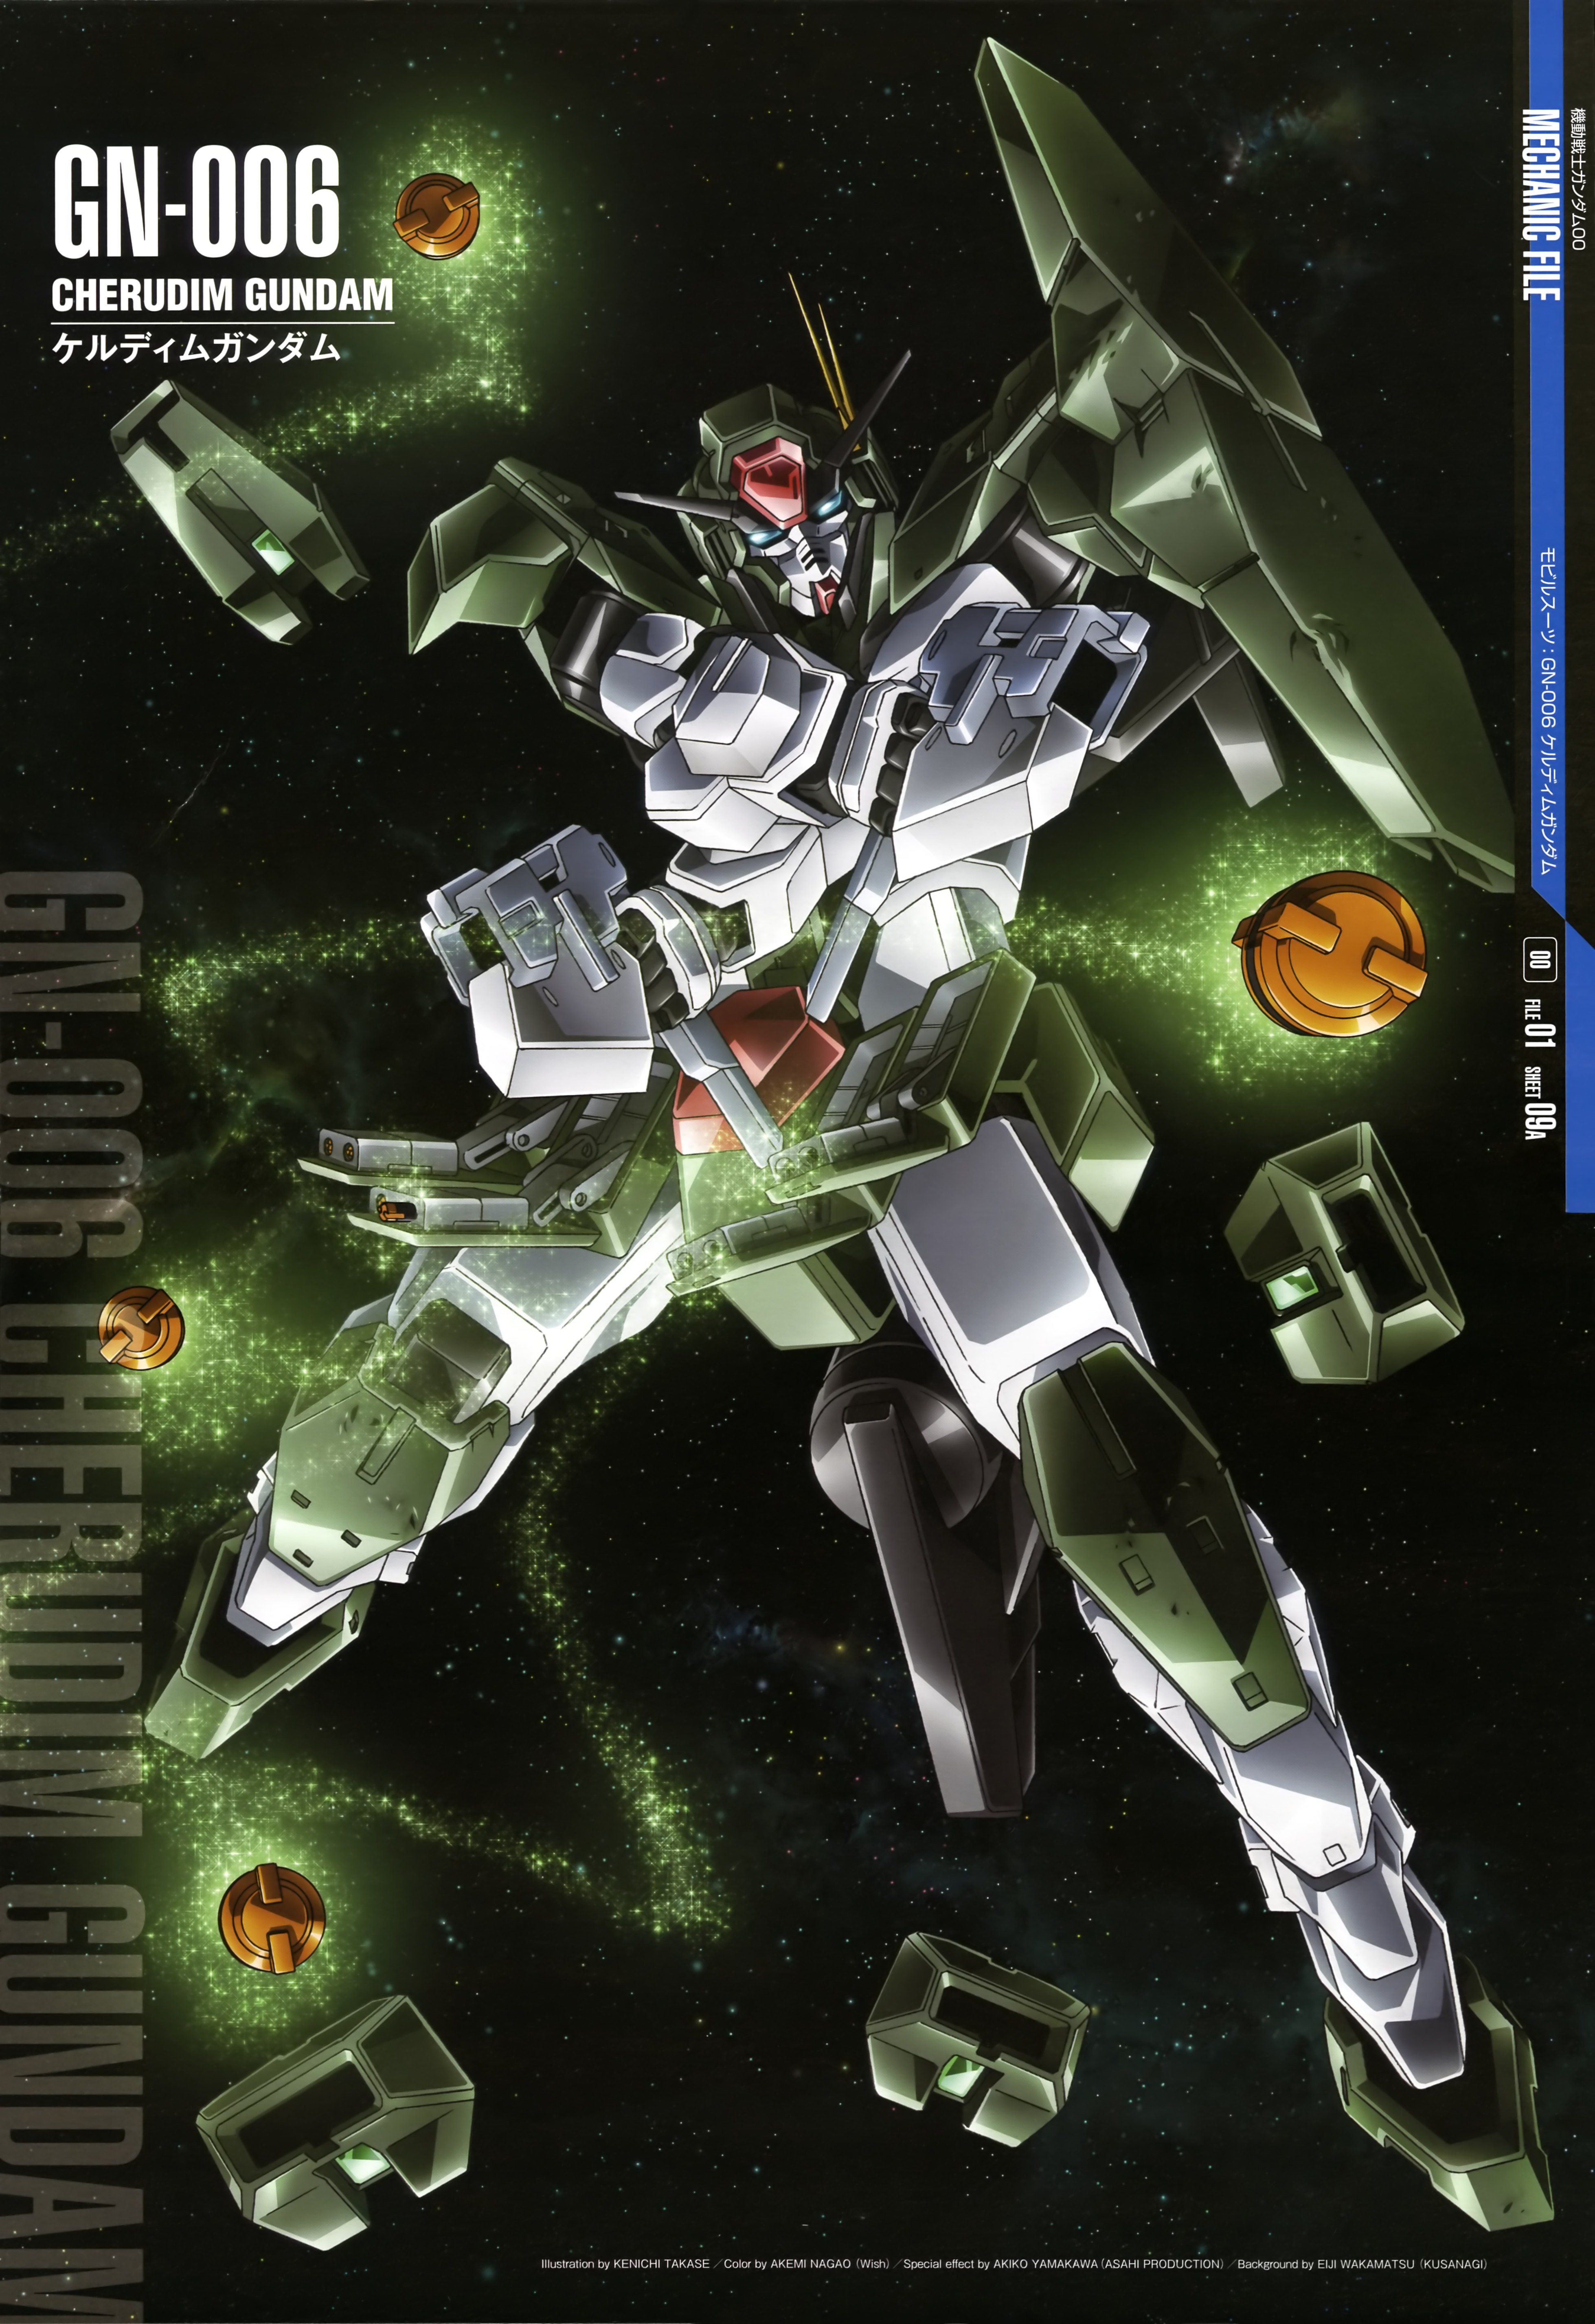 Cherudim Gundam Anime Mechs Gundam Mobile Suit Gundam 00 Super Robot Taisen Artwork Digital Art Fan  3917x5706